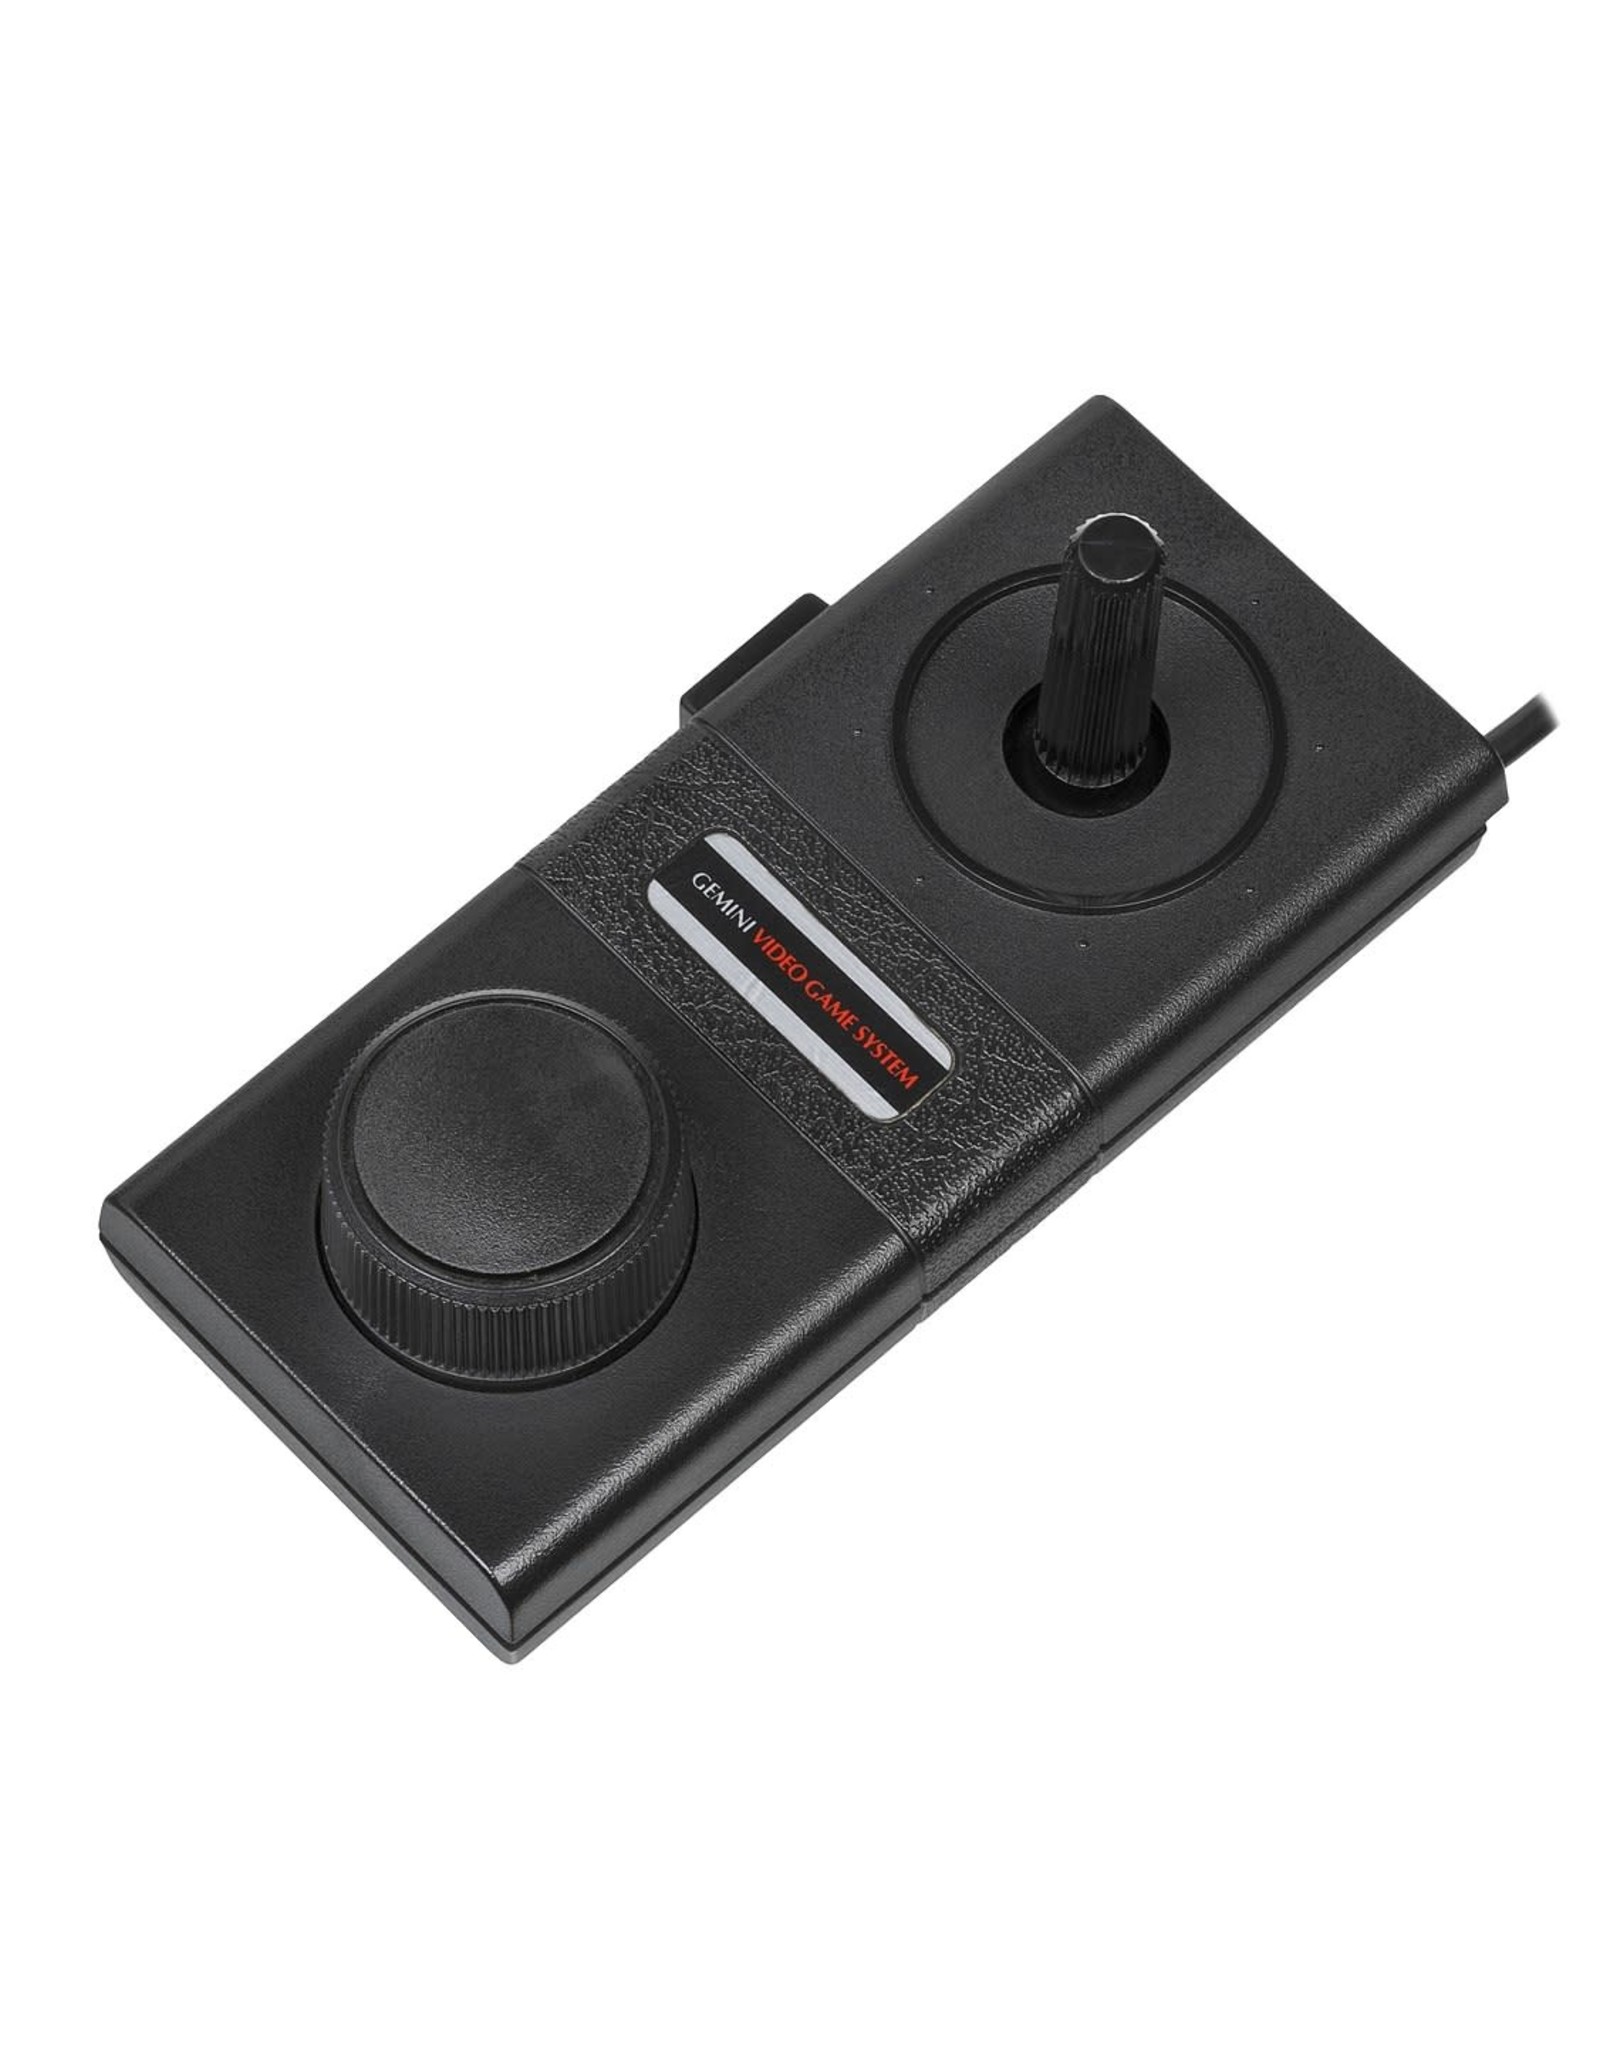 Atari 2600 Gemini Atari Style Joystick